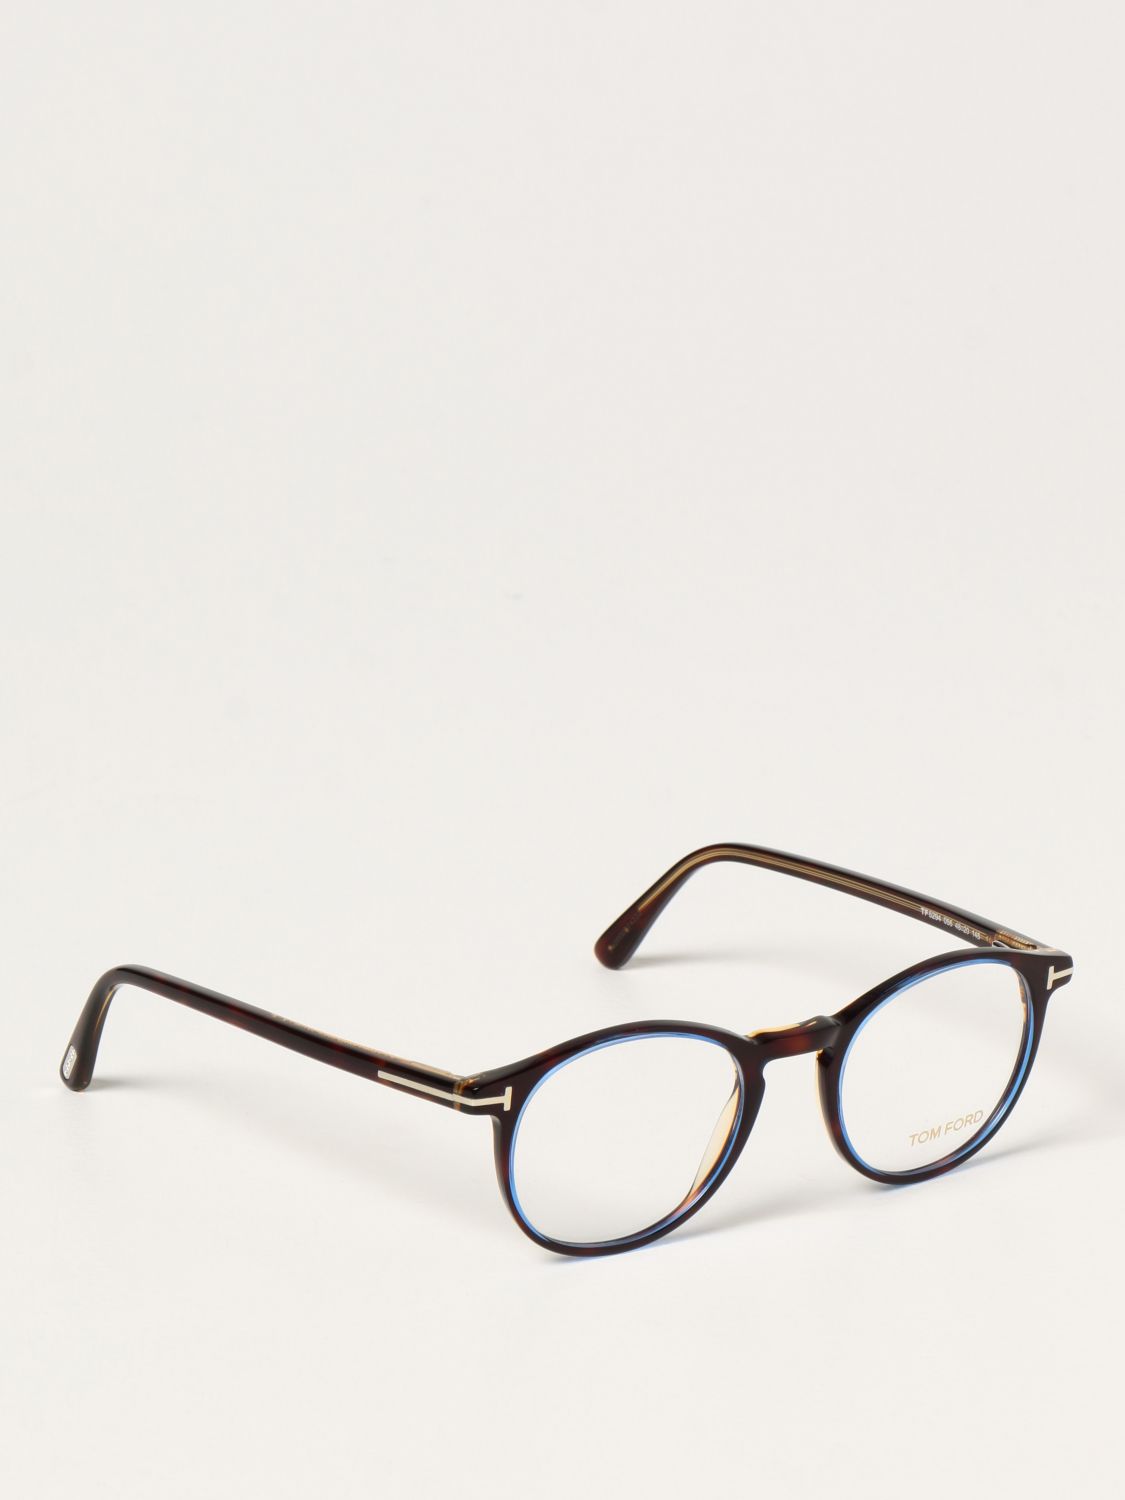 Glasses Tom Ford: Tom Ford acetate eyeglasses blue 1